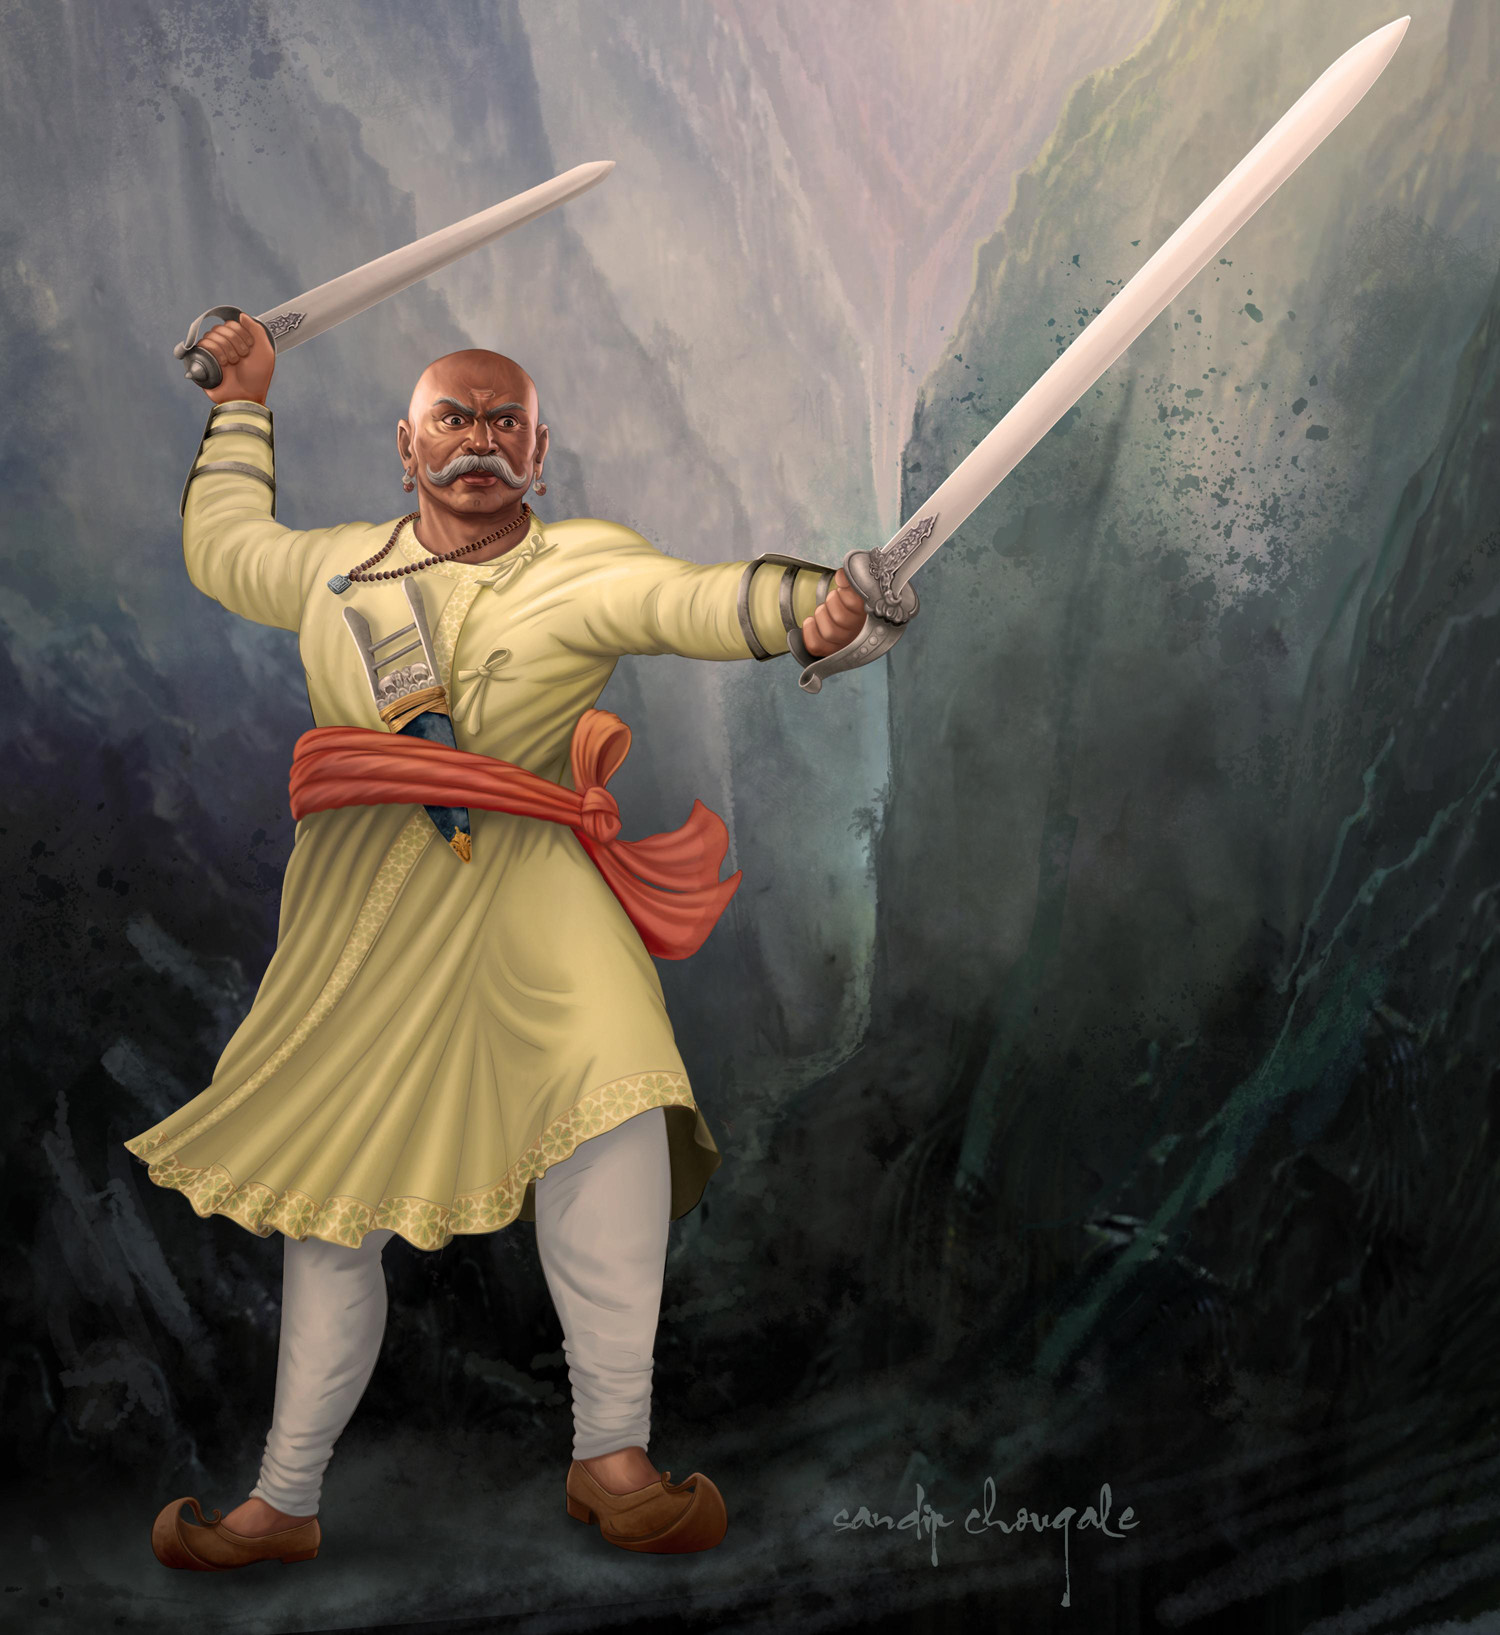 ArtStation - Maratha warrior, Sandip Chougale